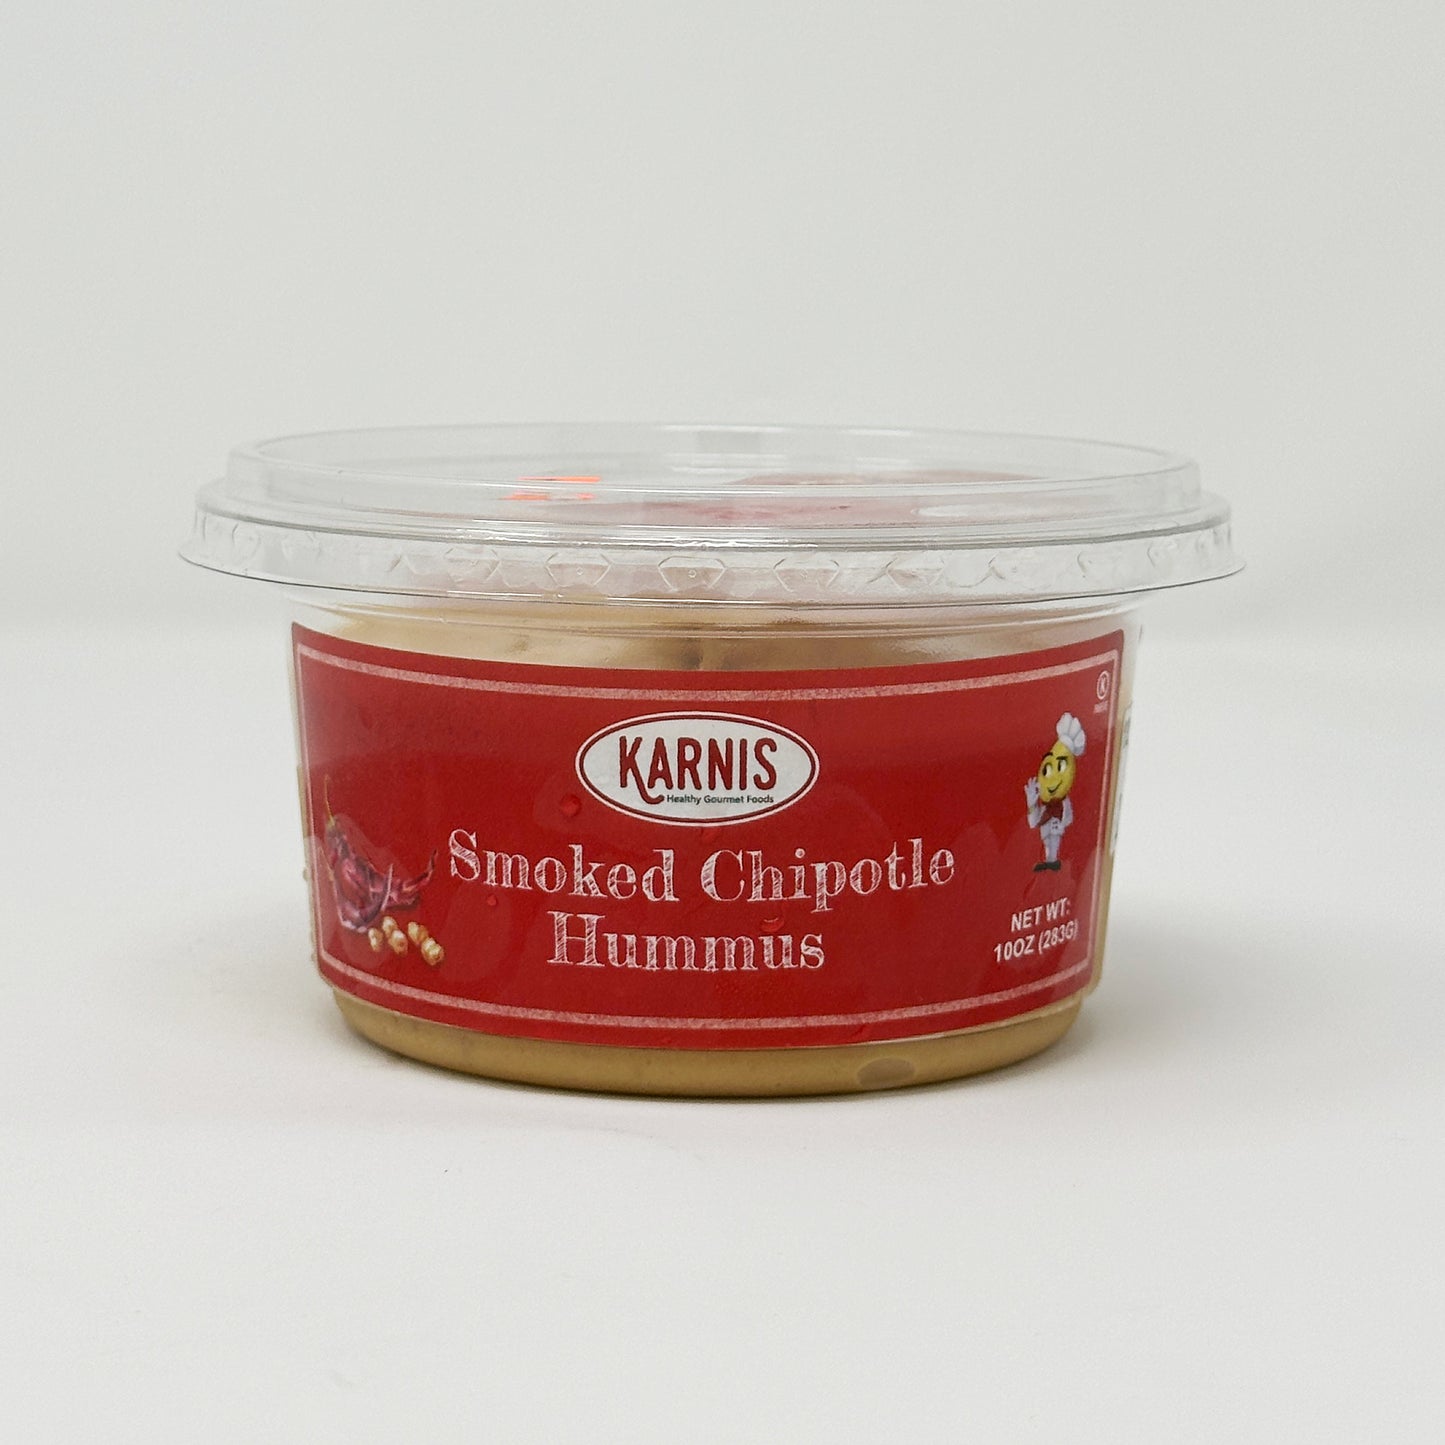 Karnis Smoked Chipotle Hummus 10 oz